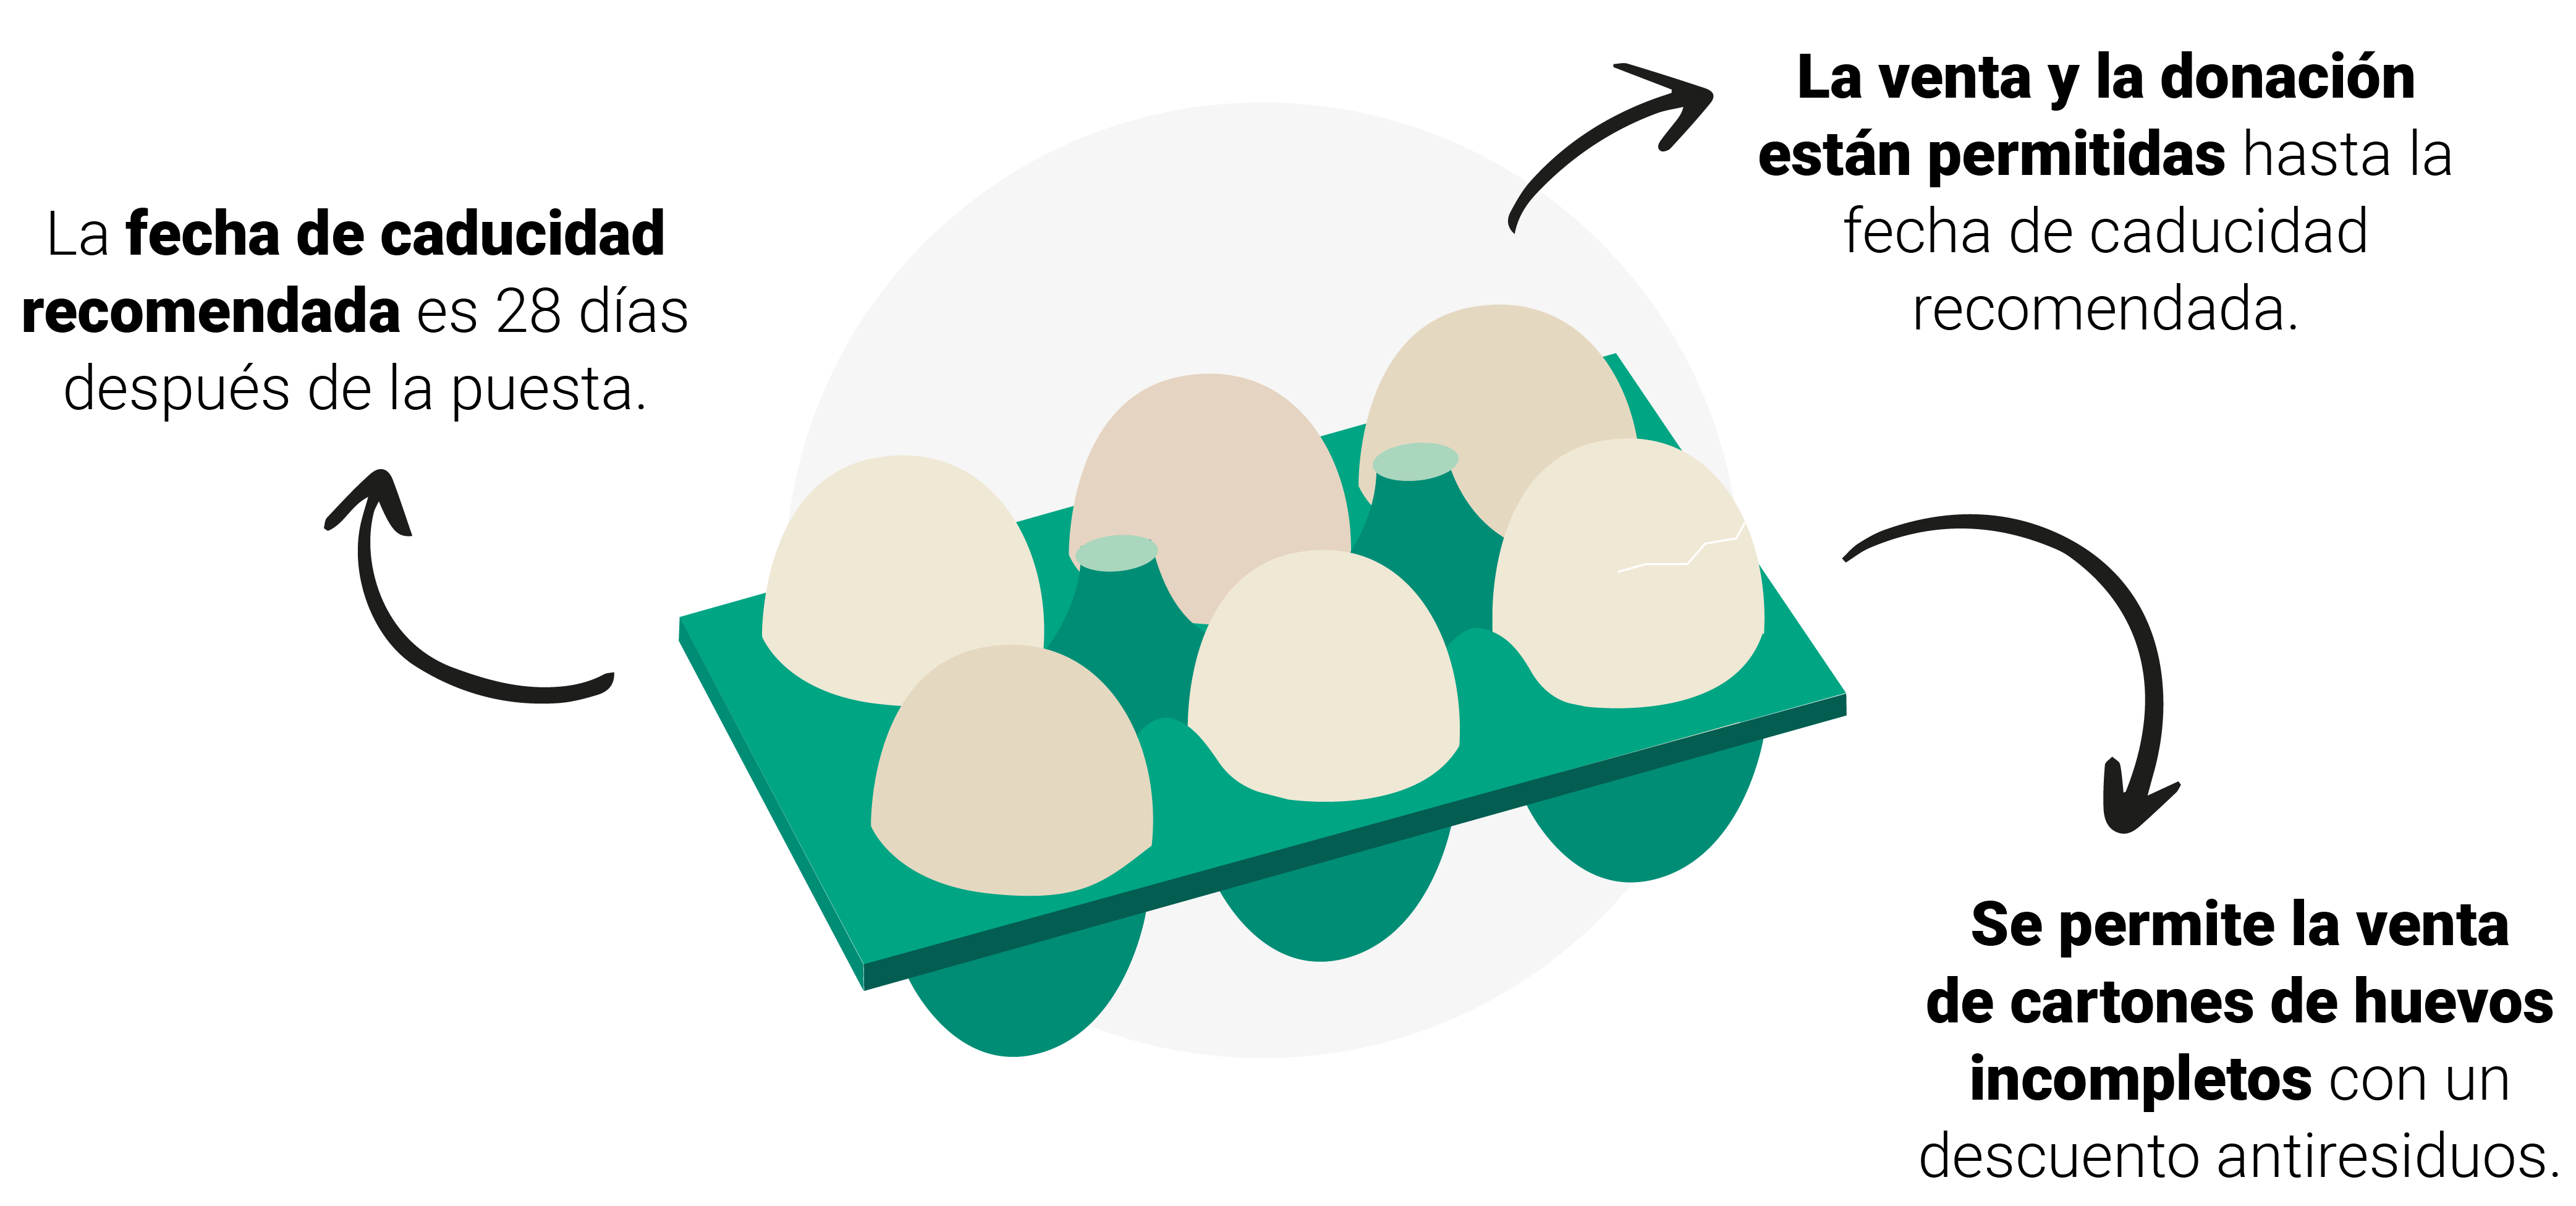 La venta de huevos